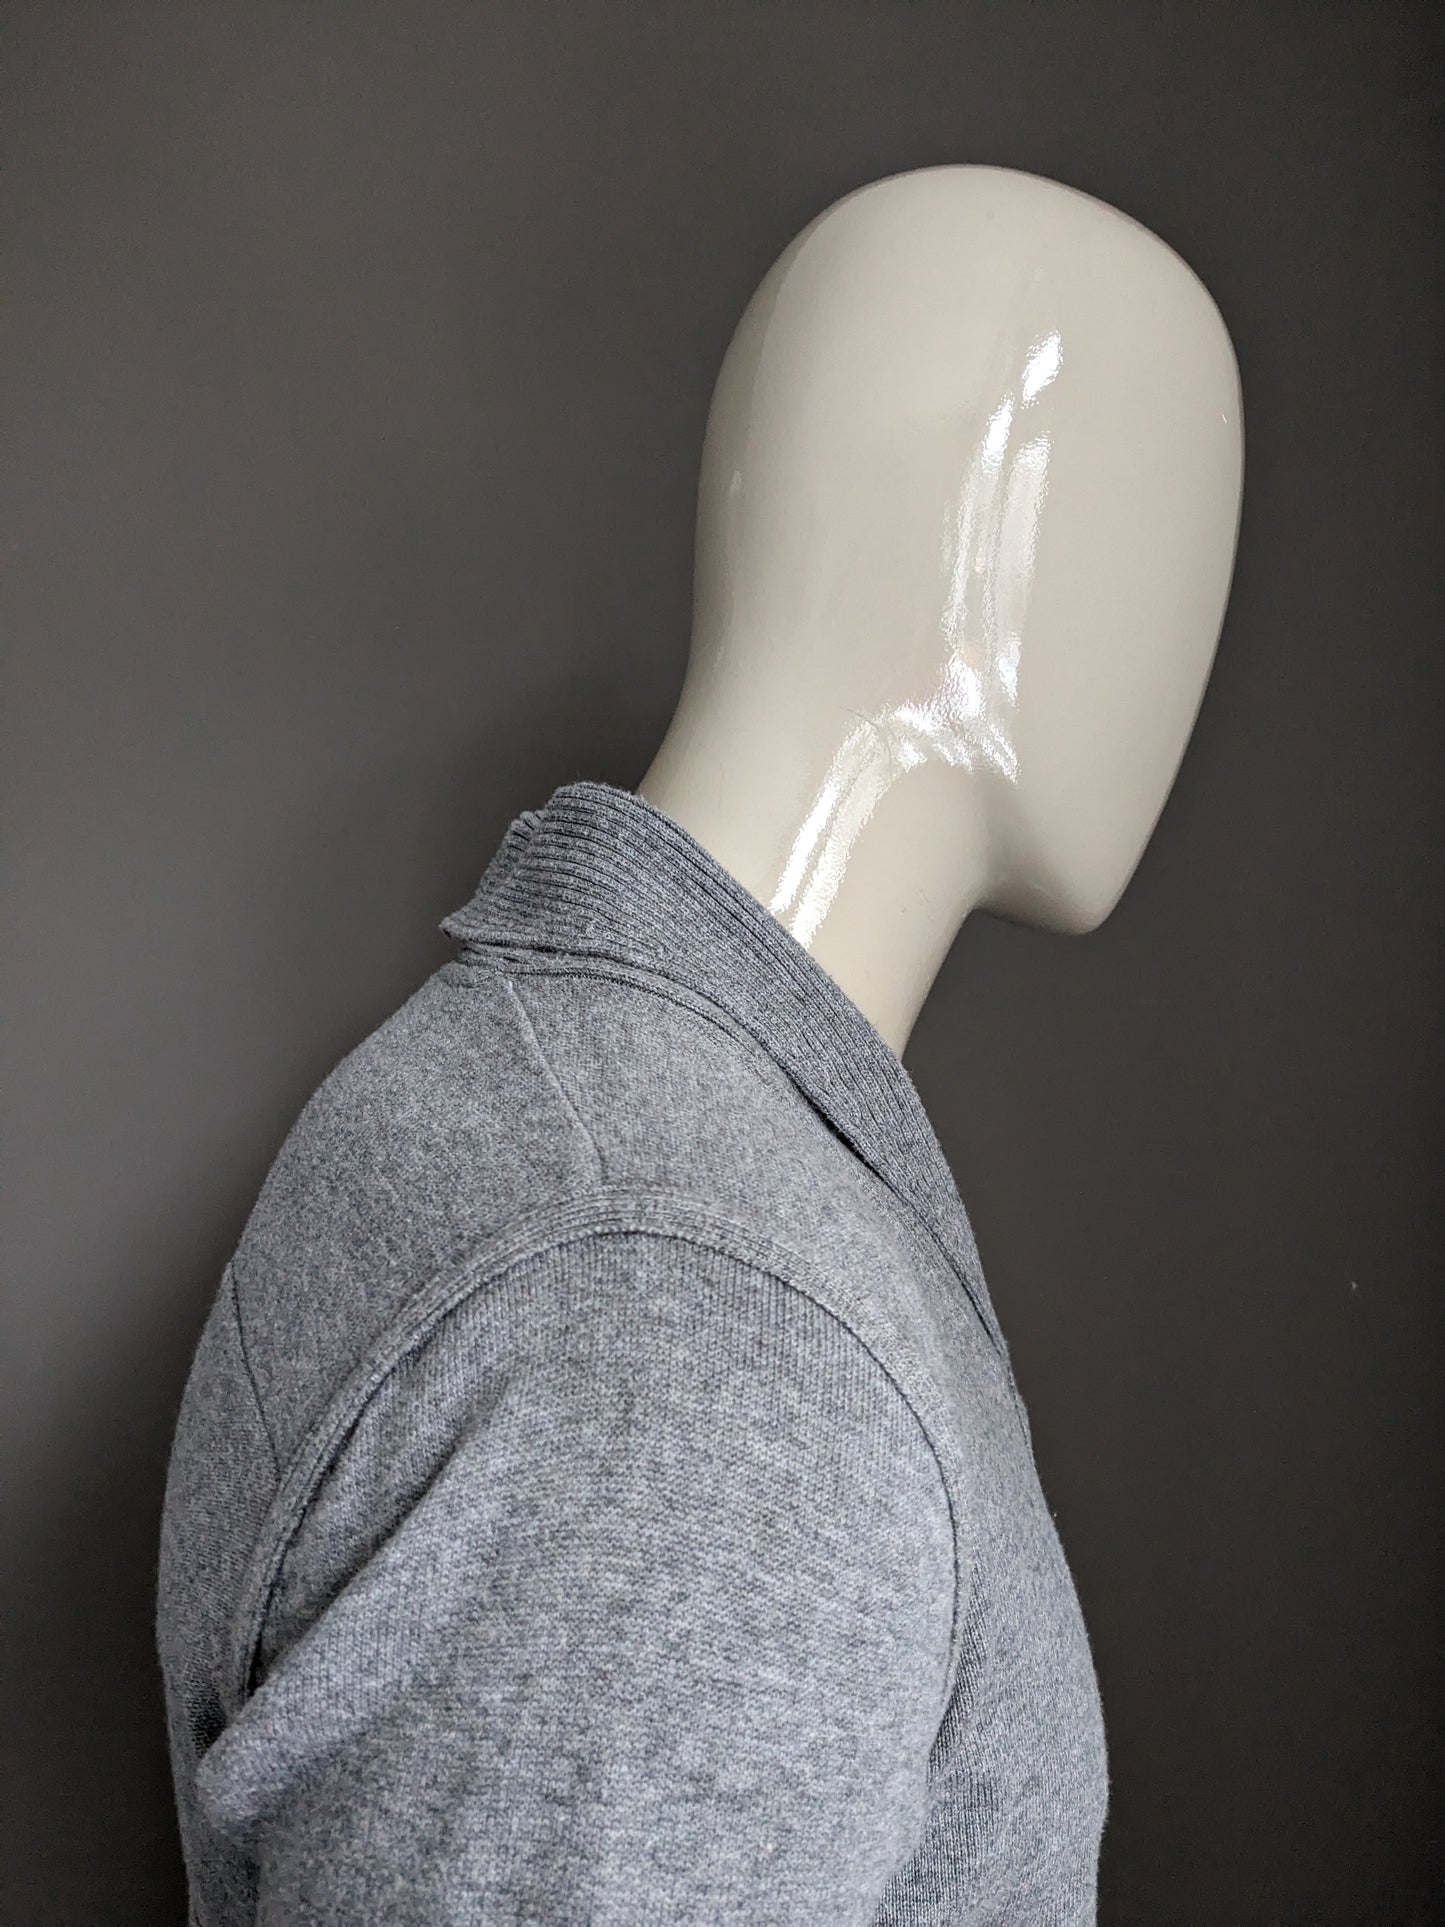 Vanguard -Pullover mit sportlichem Kragen und Knöpfen. Grau gemischt. Größe M.